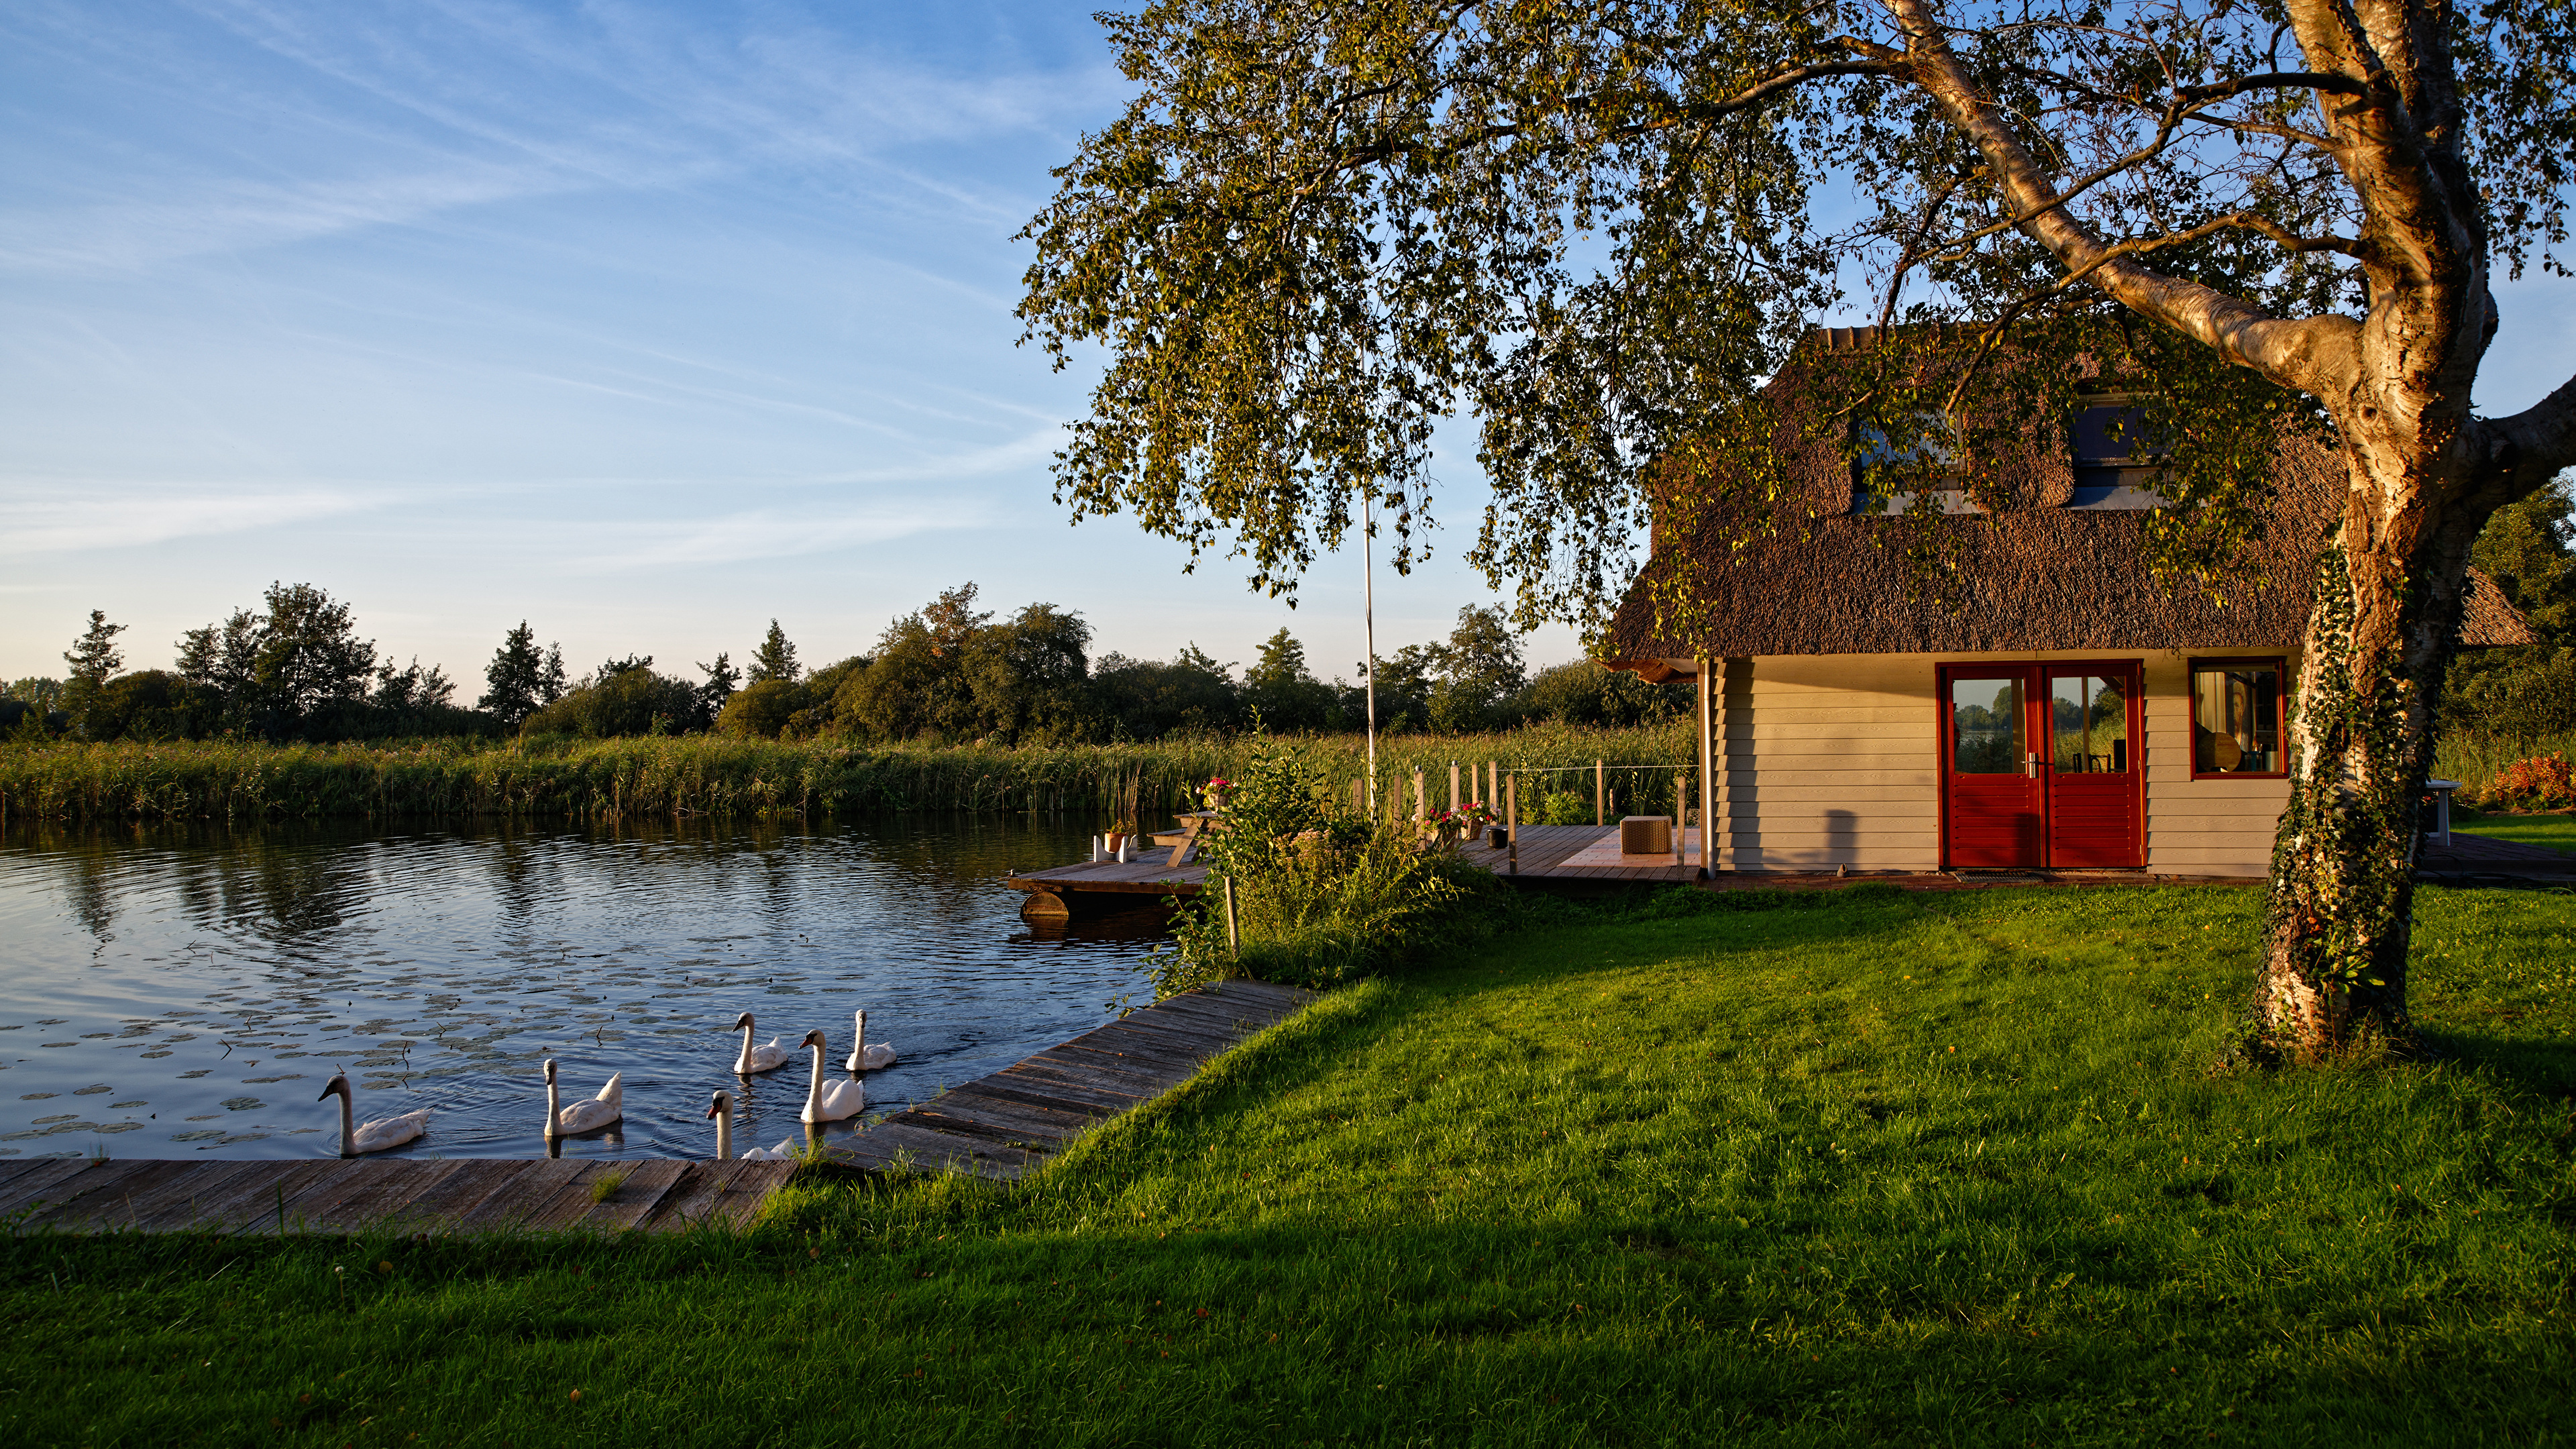 Netherlands_Houses_Pond_Ducks_Utrecht_Tr